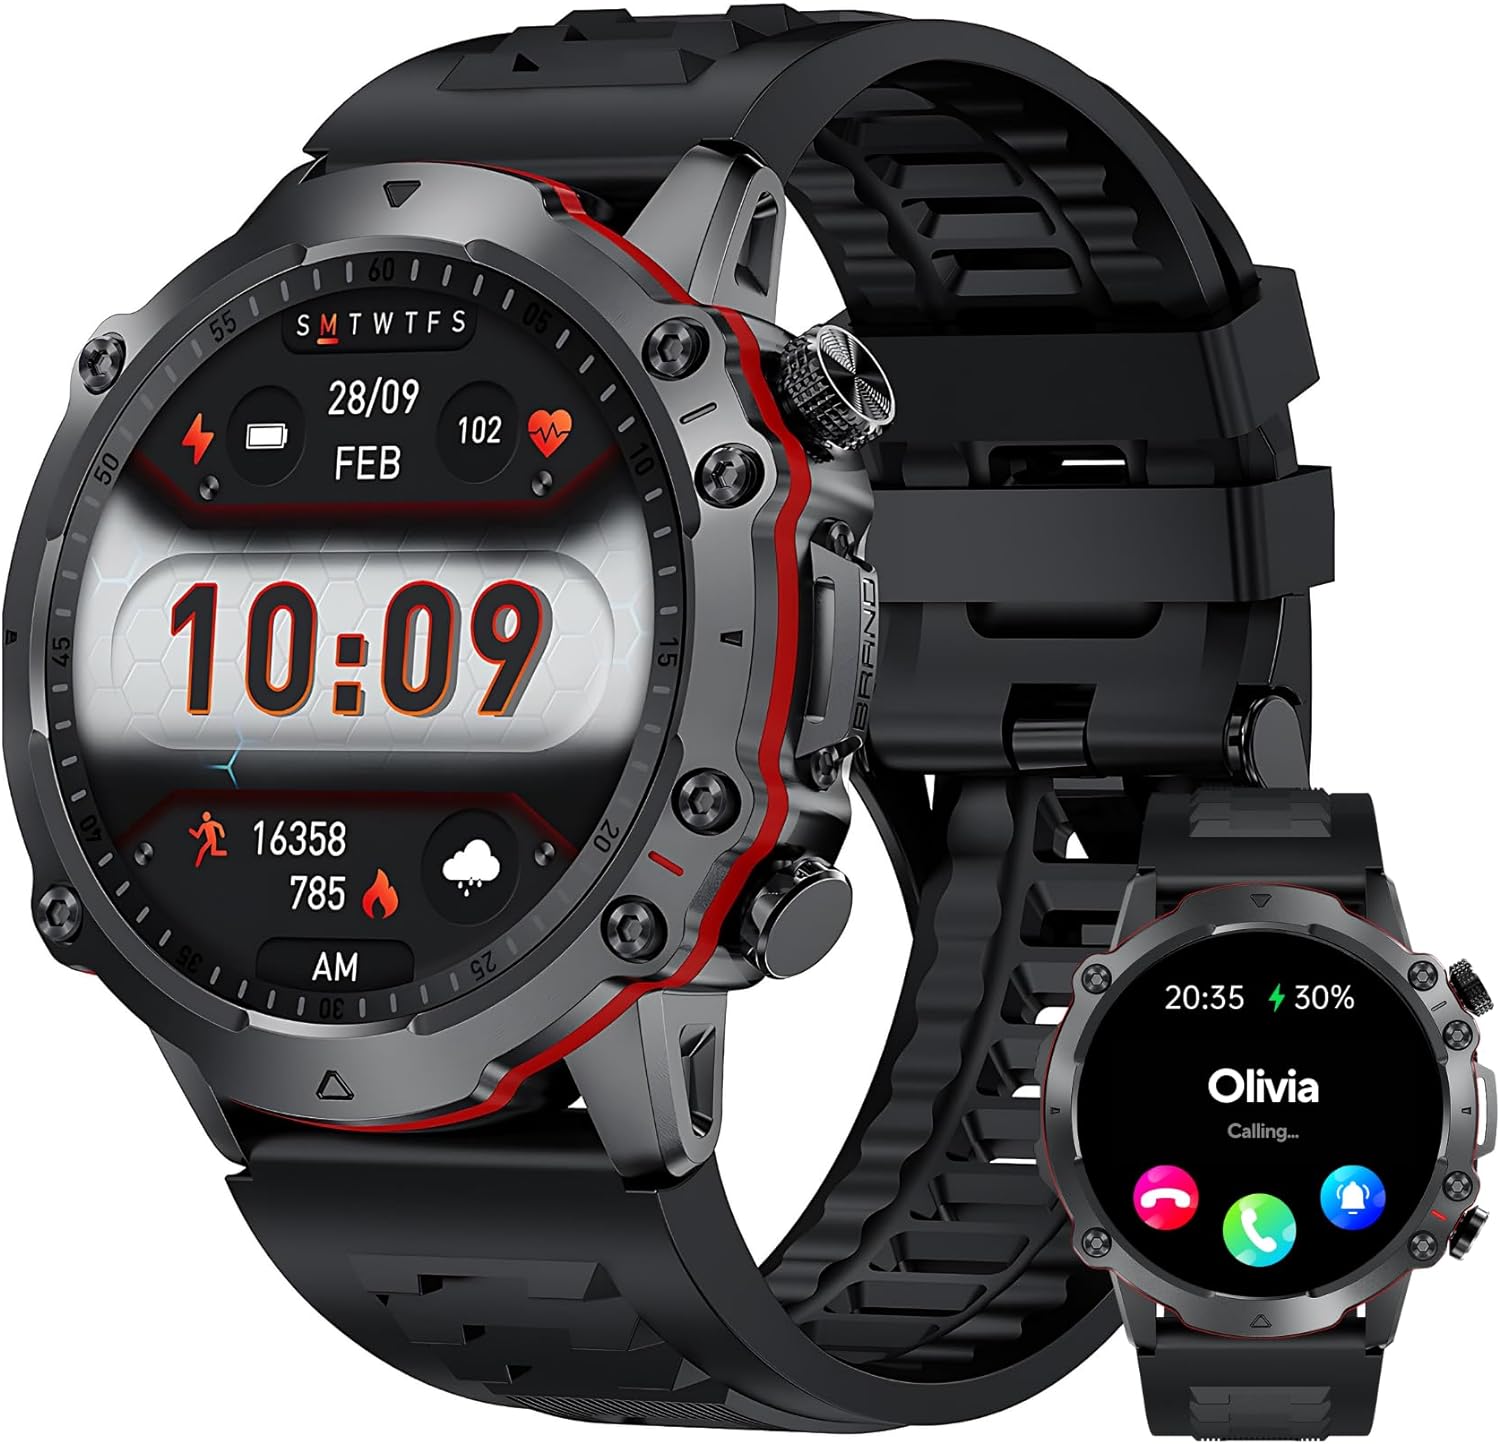 Smartwatch Rugged Pro AMOLED AOD per uomo e donna: un gadget rivoluzionario per la tua salute e attività